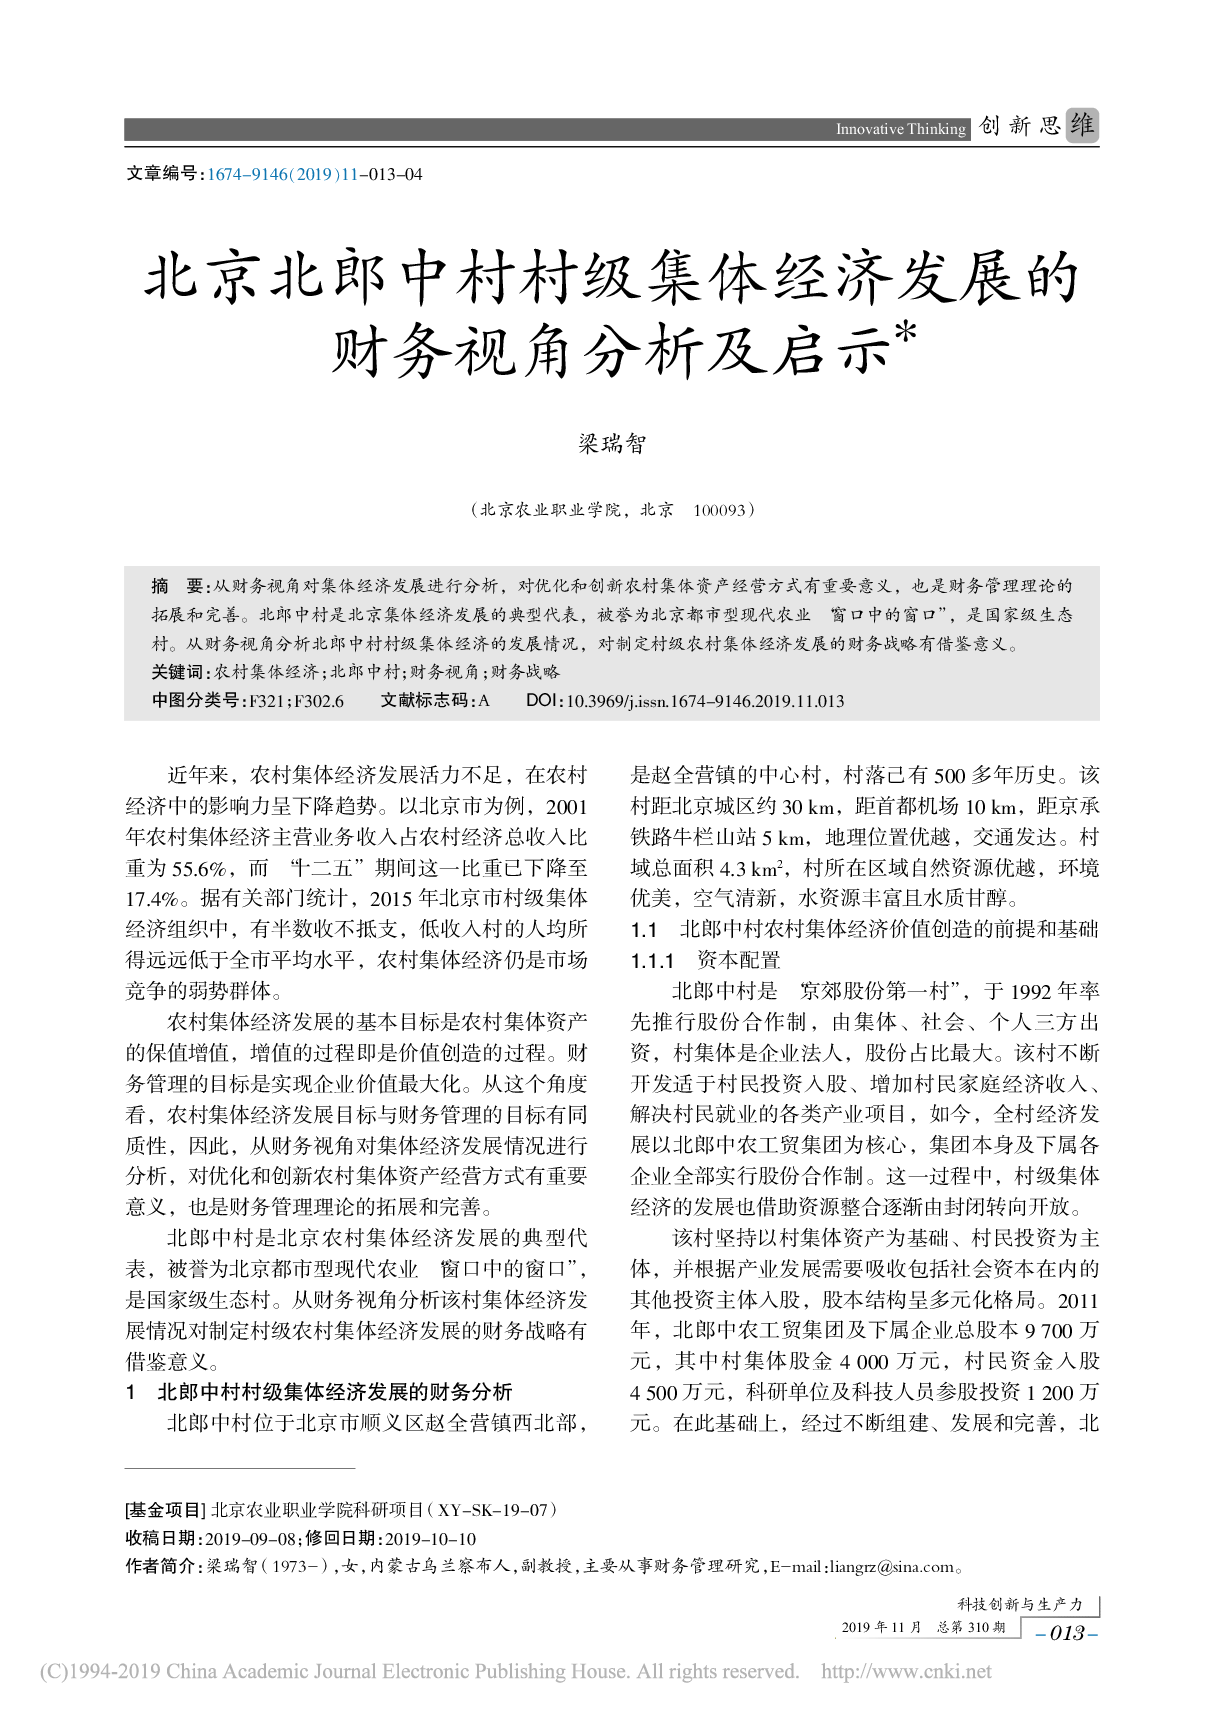 北京北郎中村村级集体经济发展的财务视角分析及启示